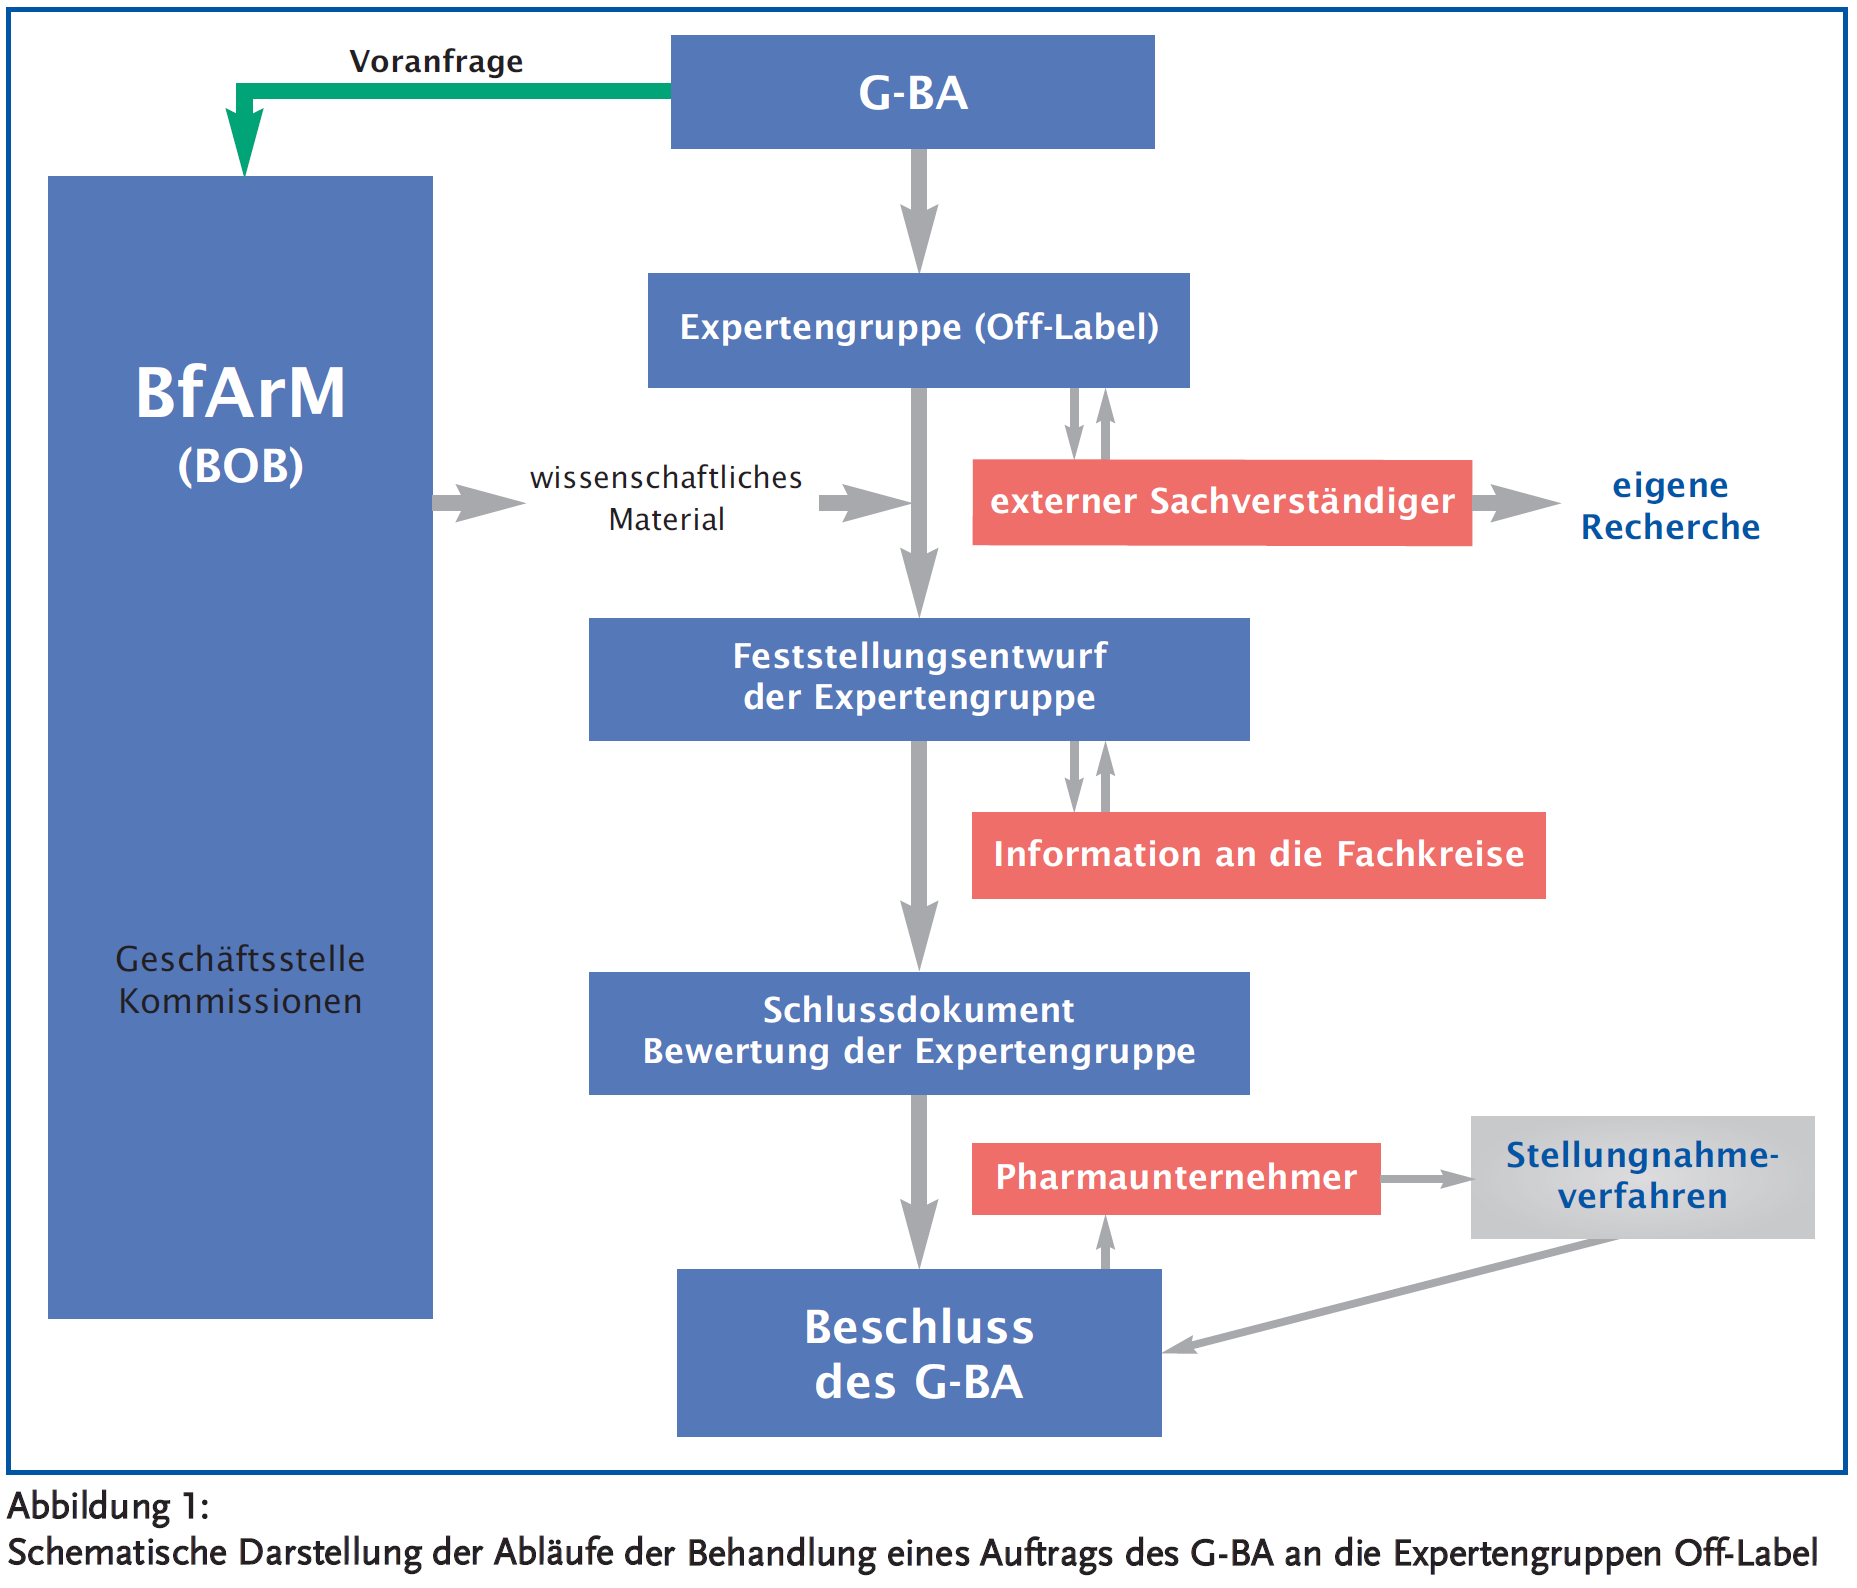 Abbildung 1: Schematische Darstellung der Abläufe der Behandlung eines Auftrags des G-BA an die Expertengruppen Off-Label